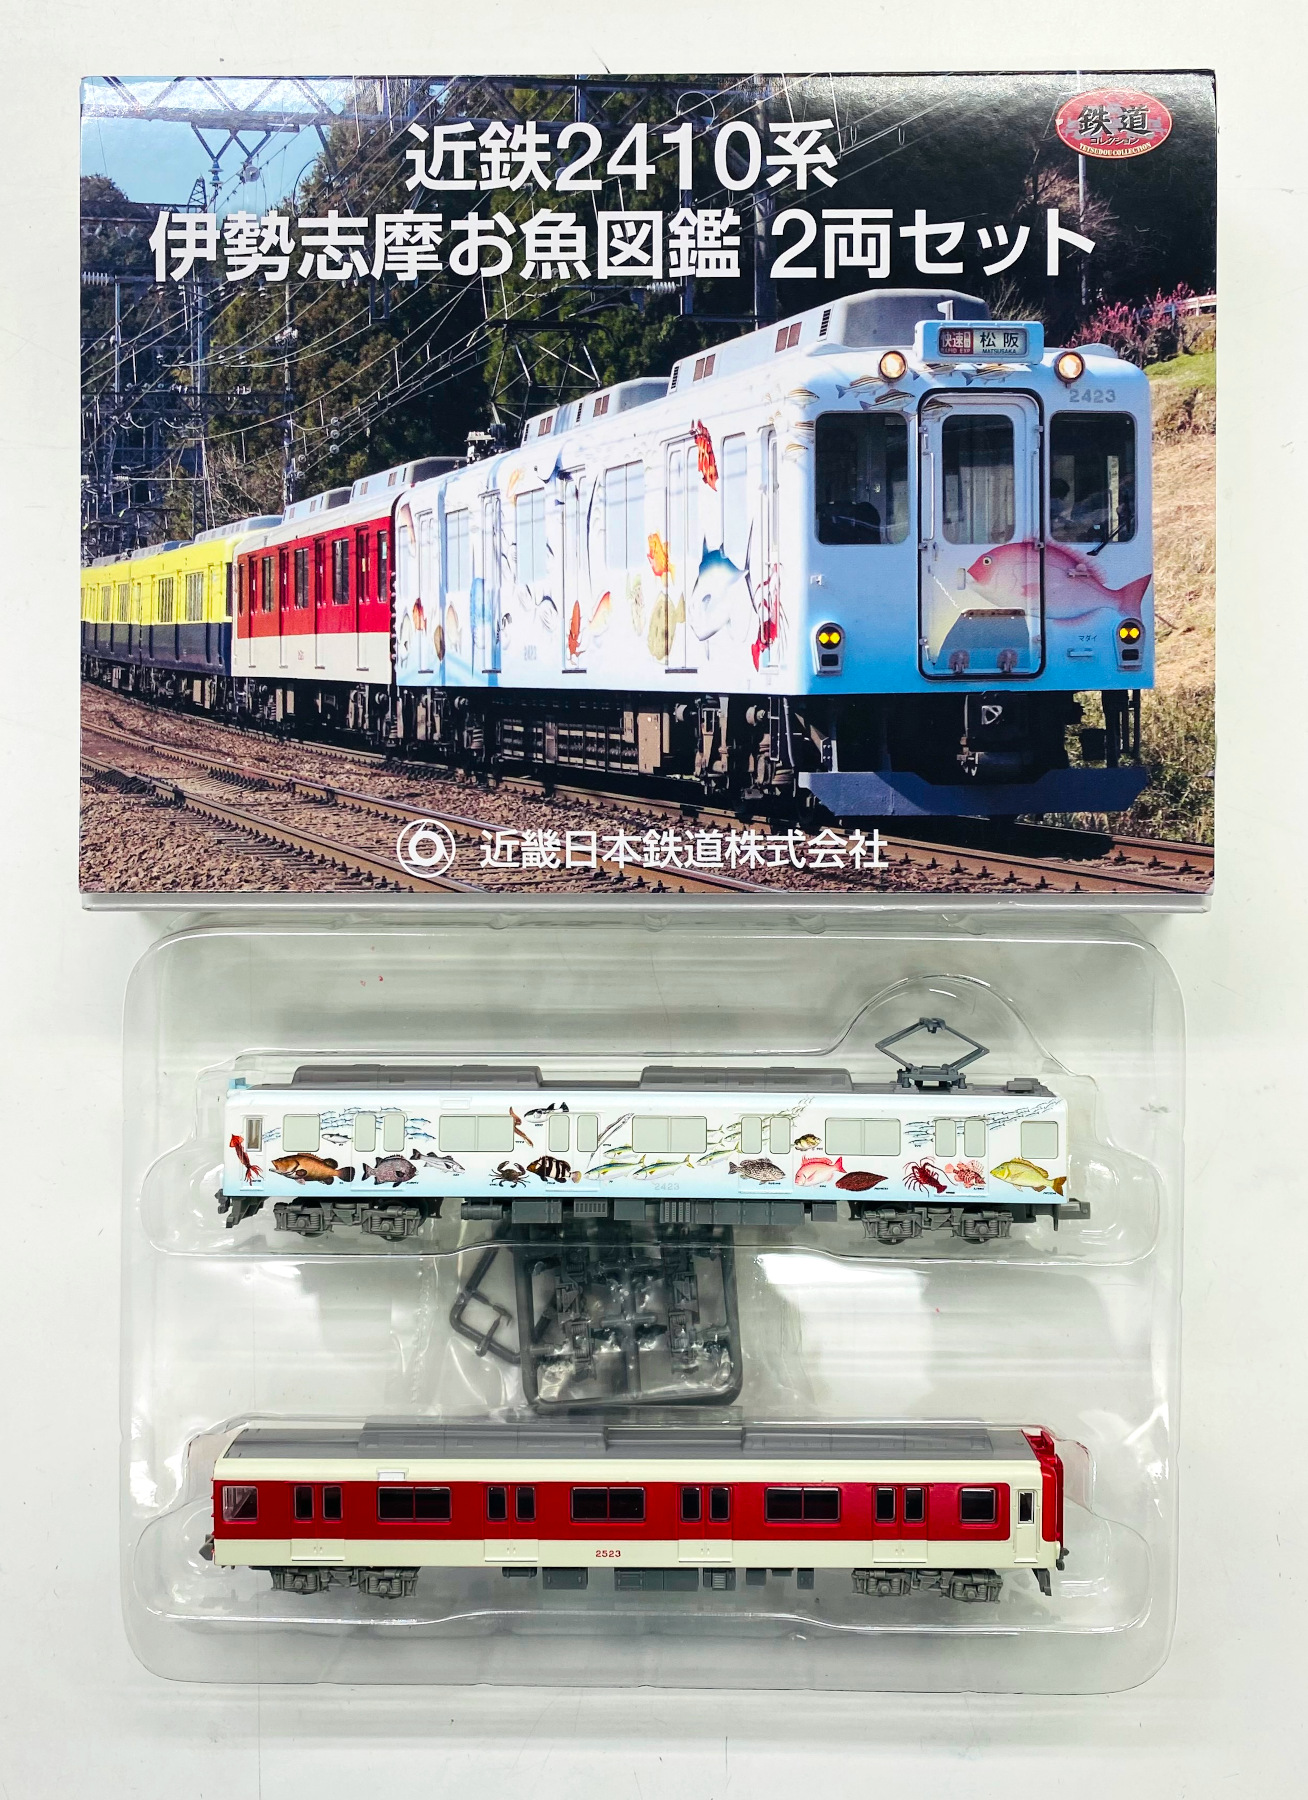 鉄道コレクション 近鉄2410系伊勢志摩お魚図鑑 2両セット - 鉄道模型